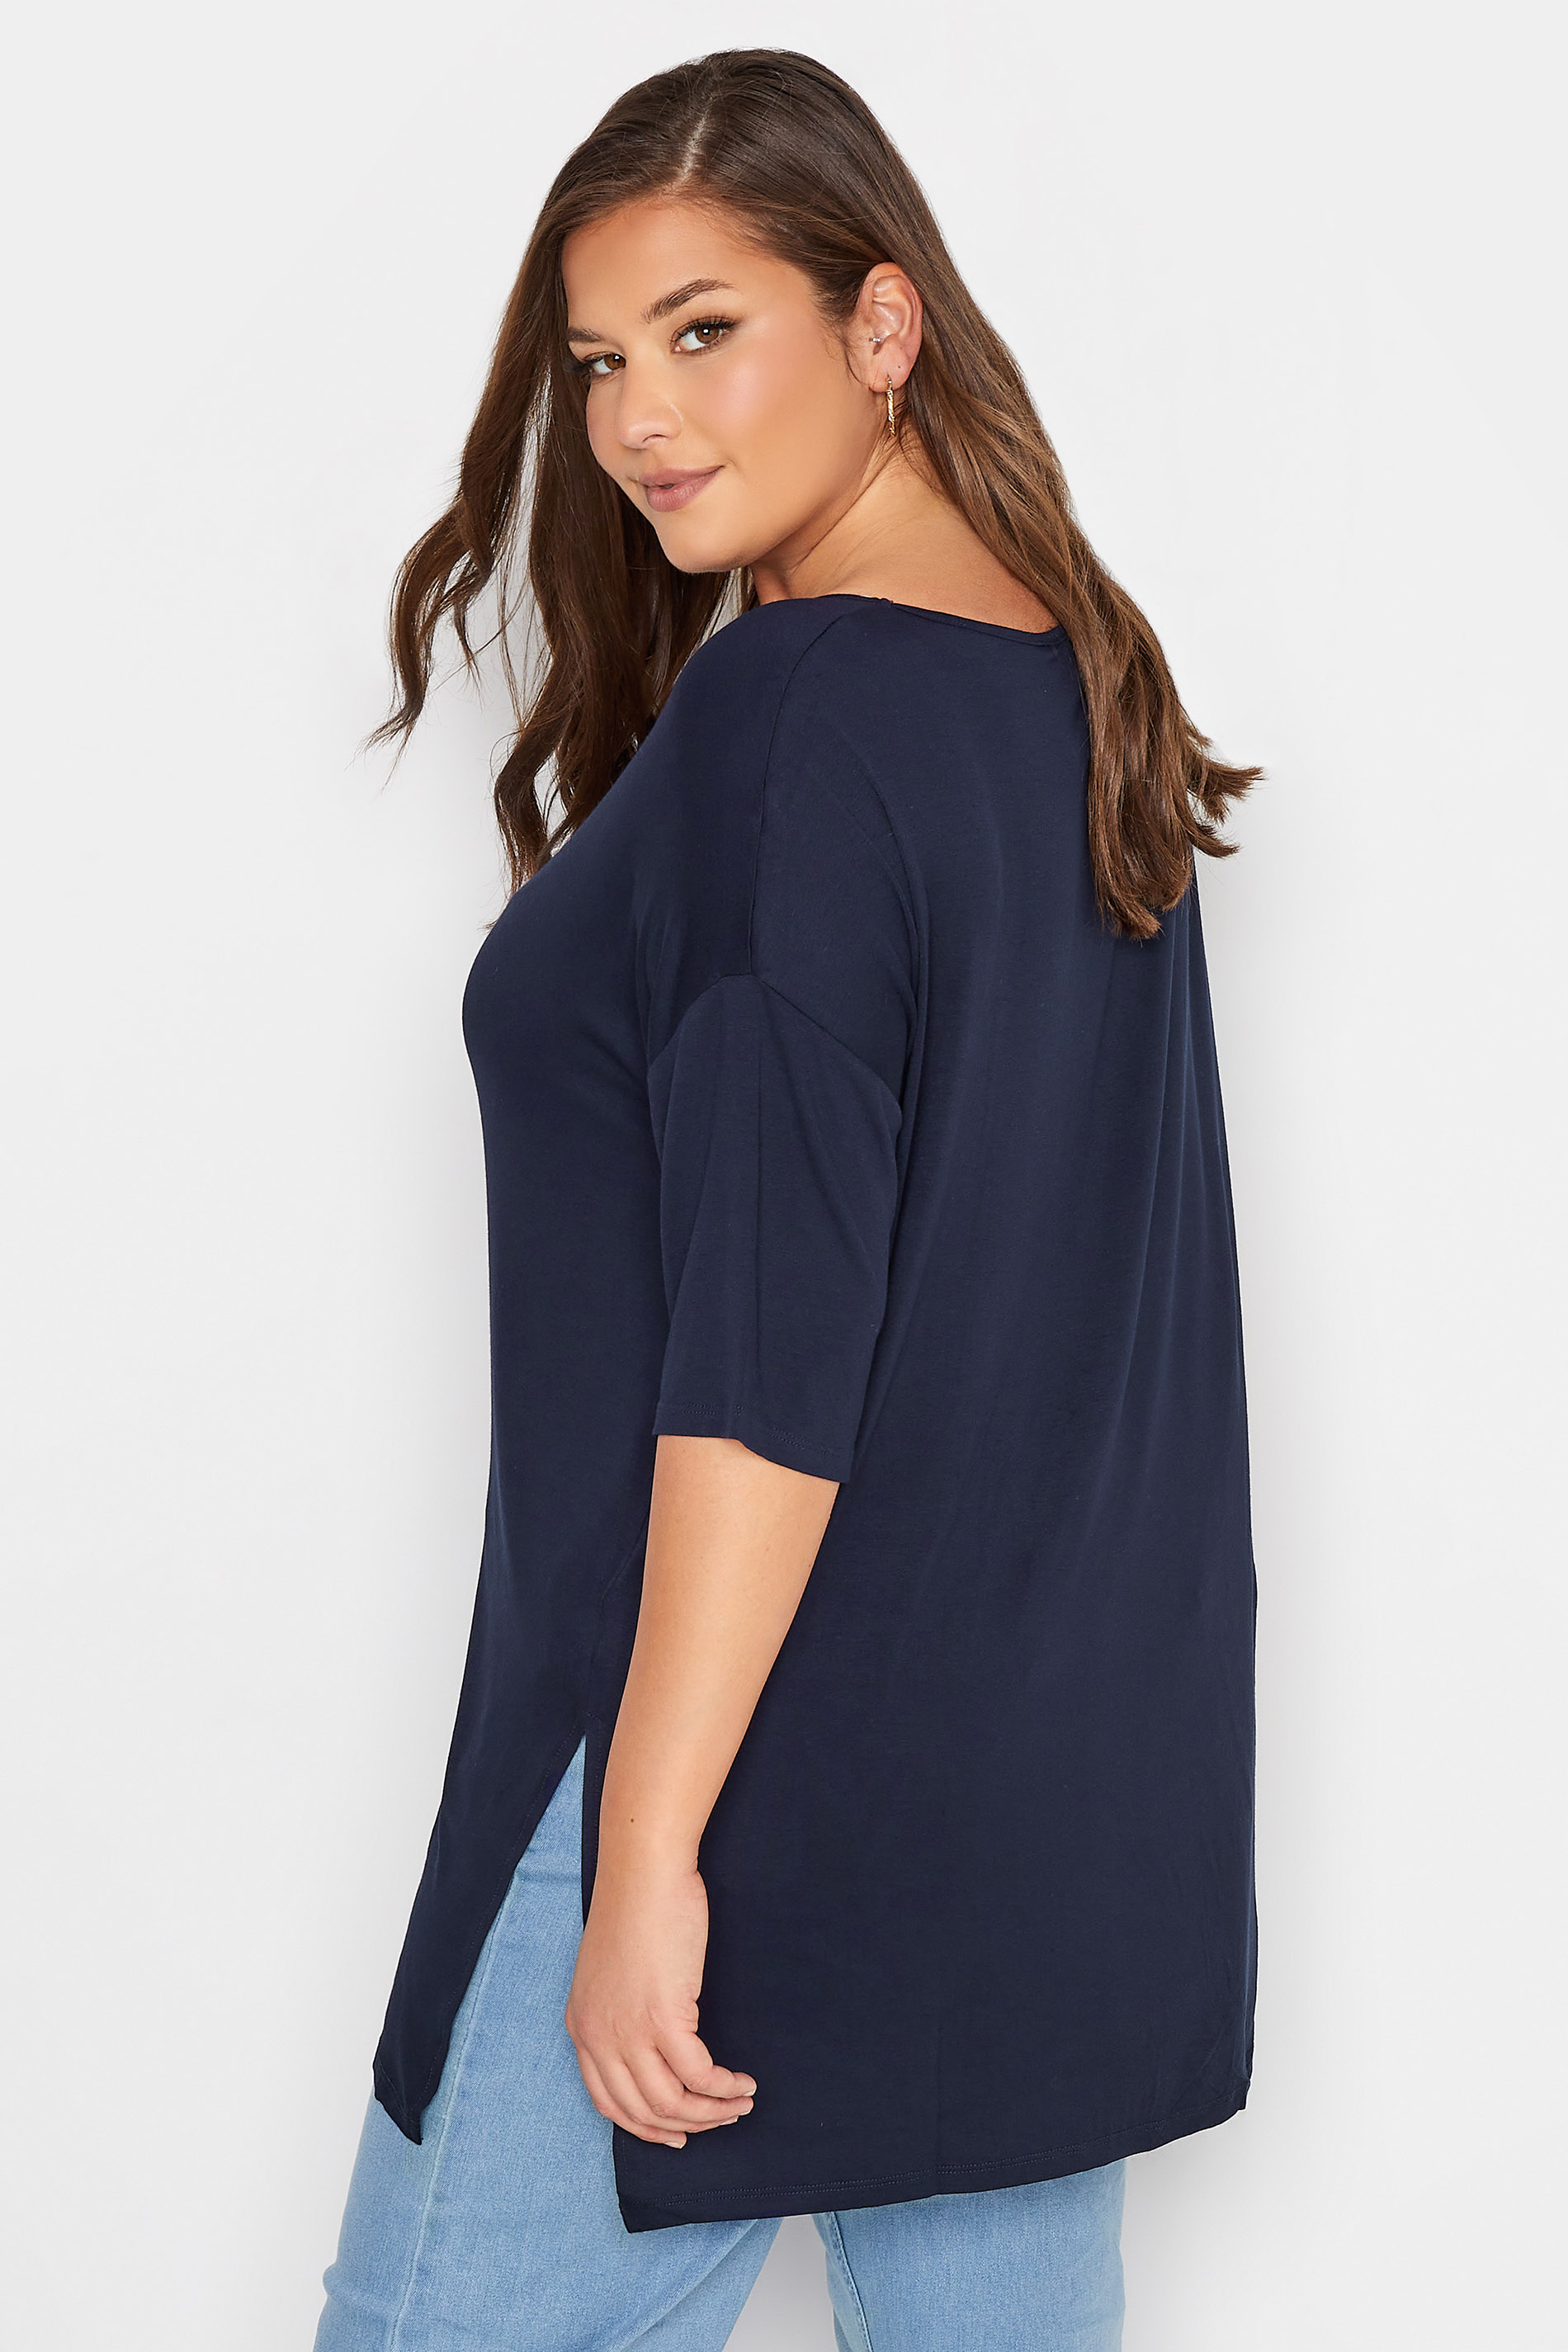 Plus Size Navy Blue Oversized T-Shirt | Yours Clothing